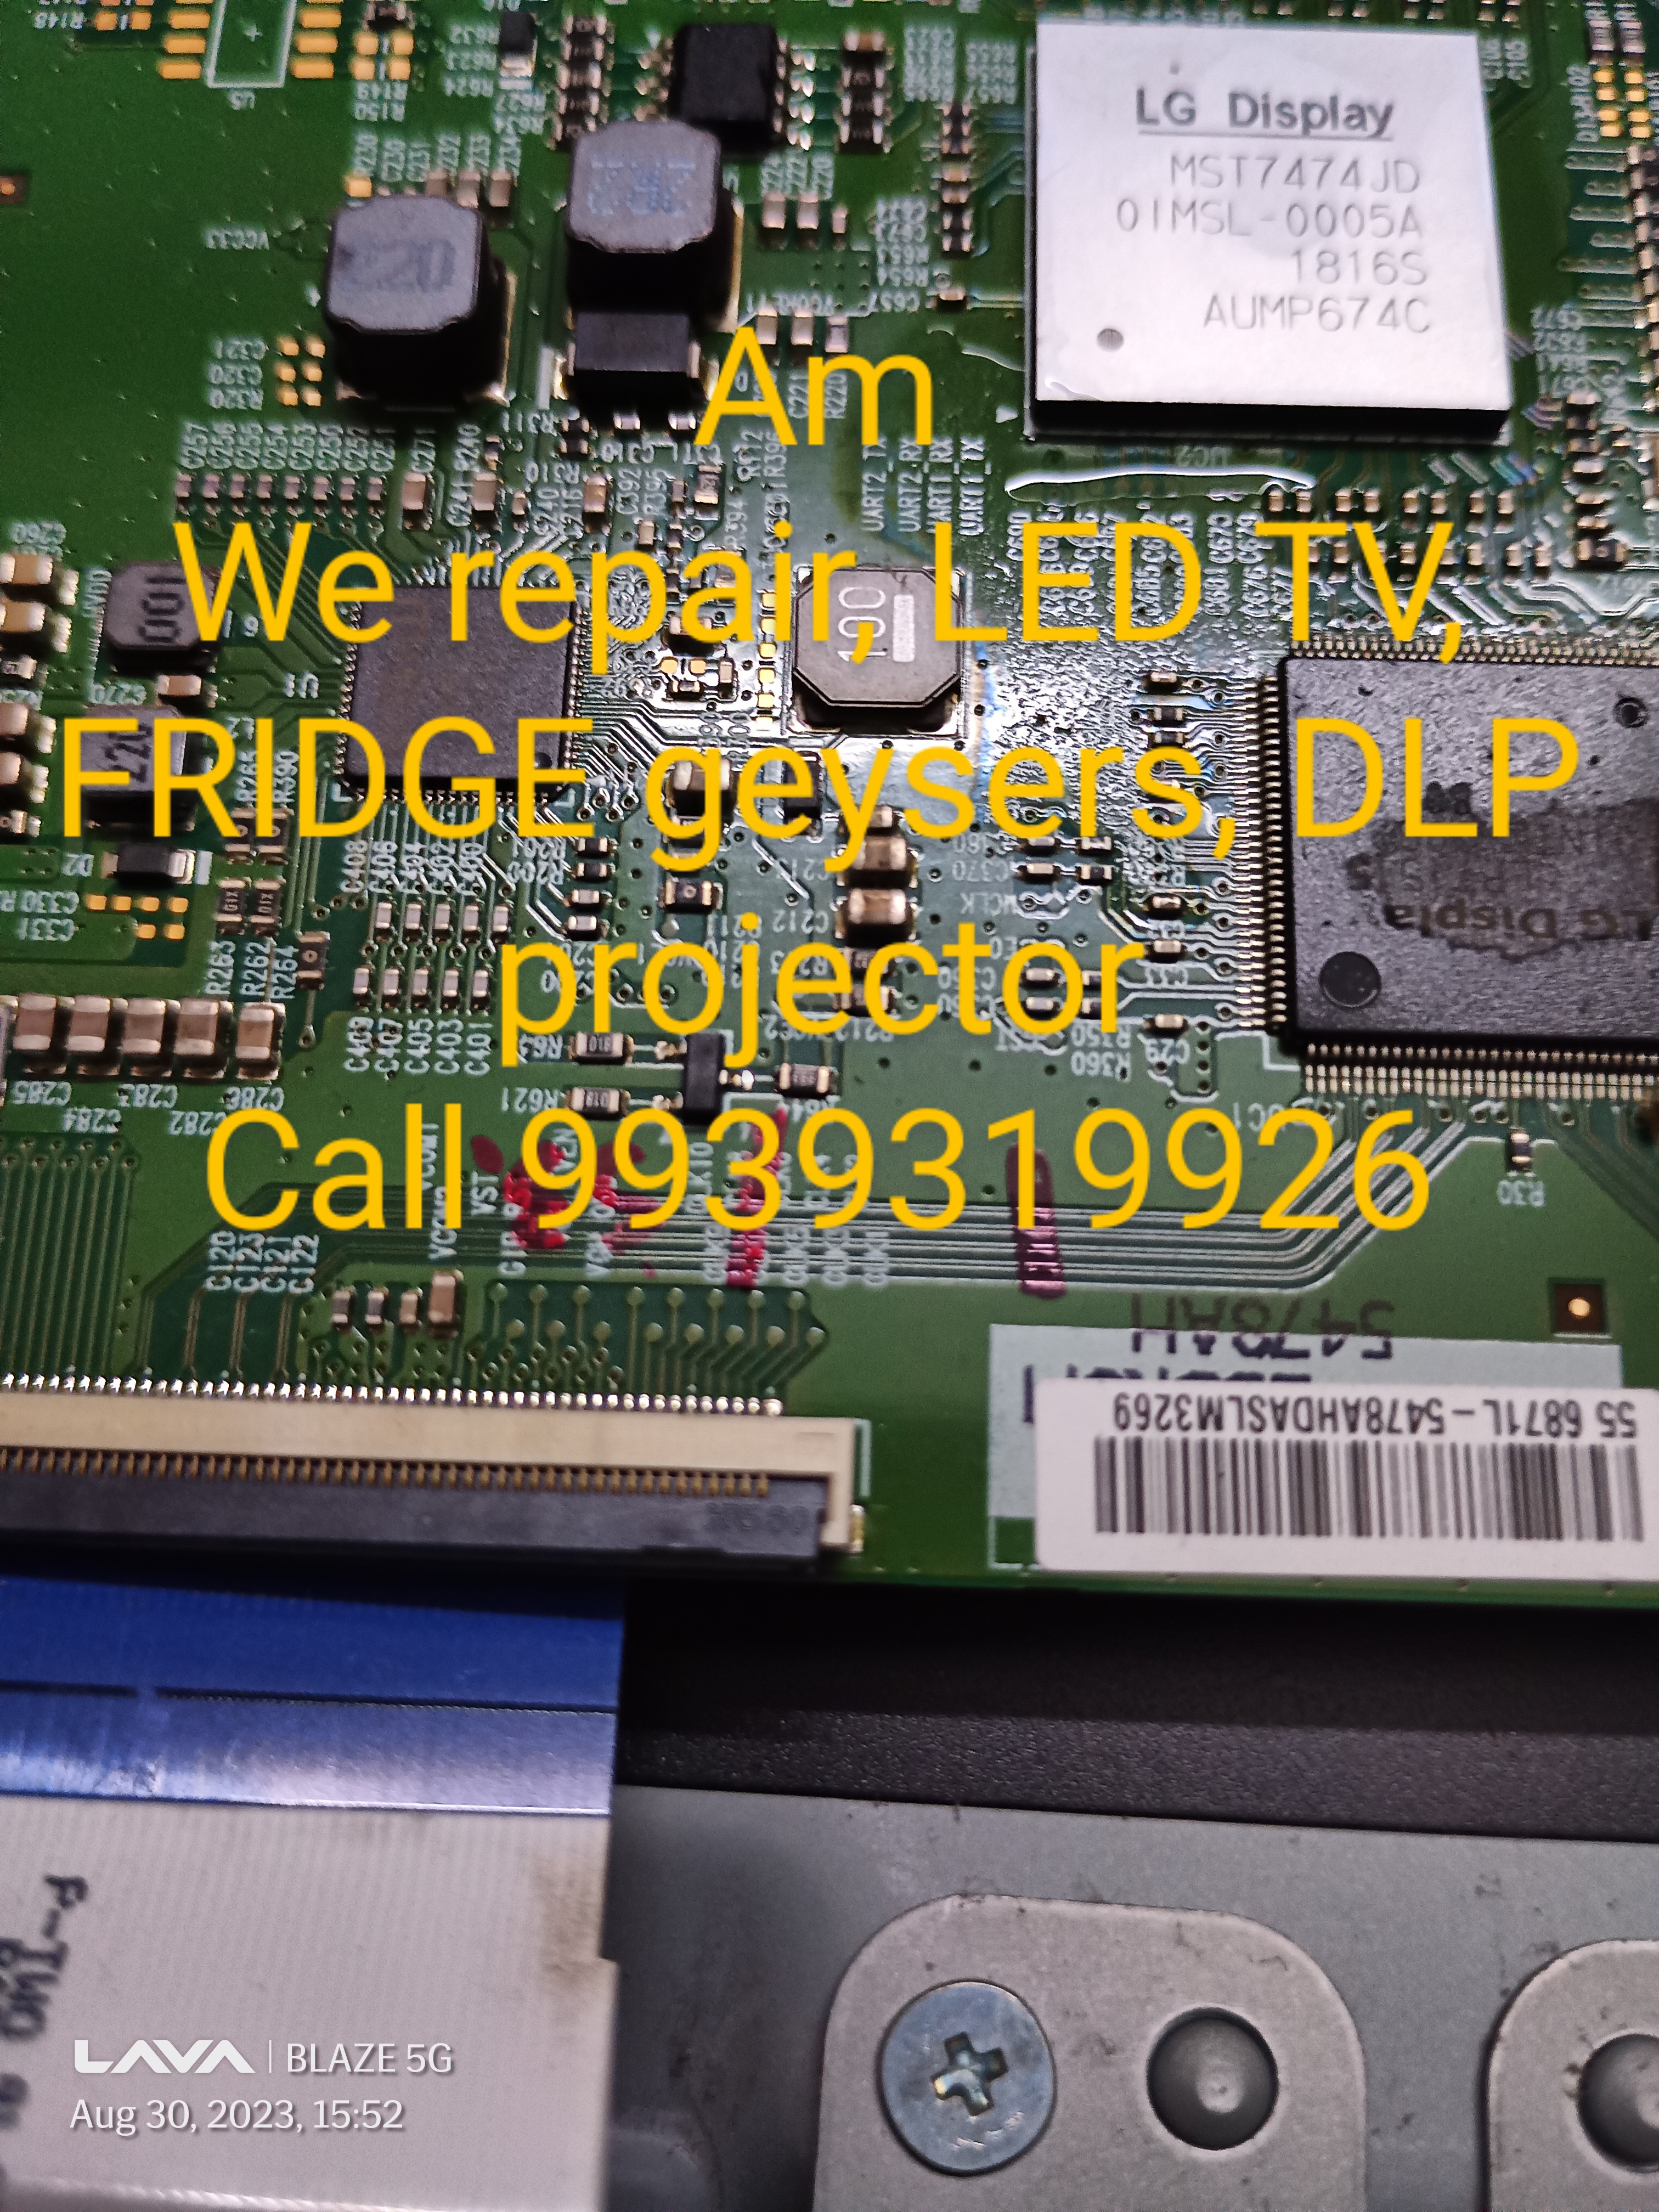 LED LCD TV repair service  image